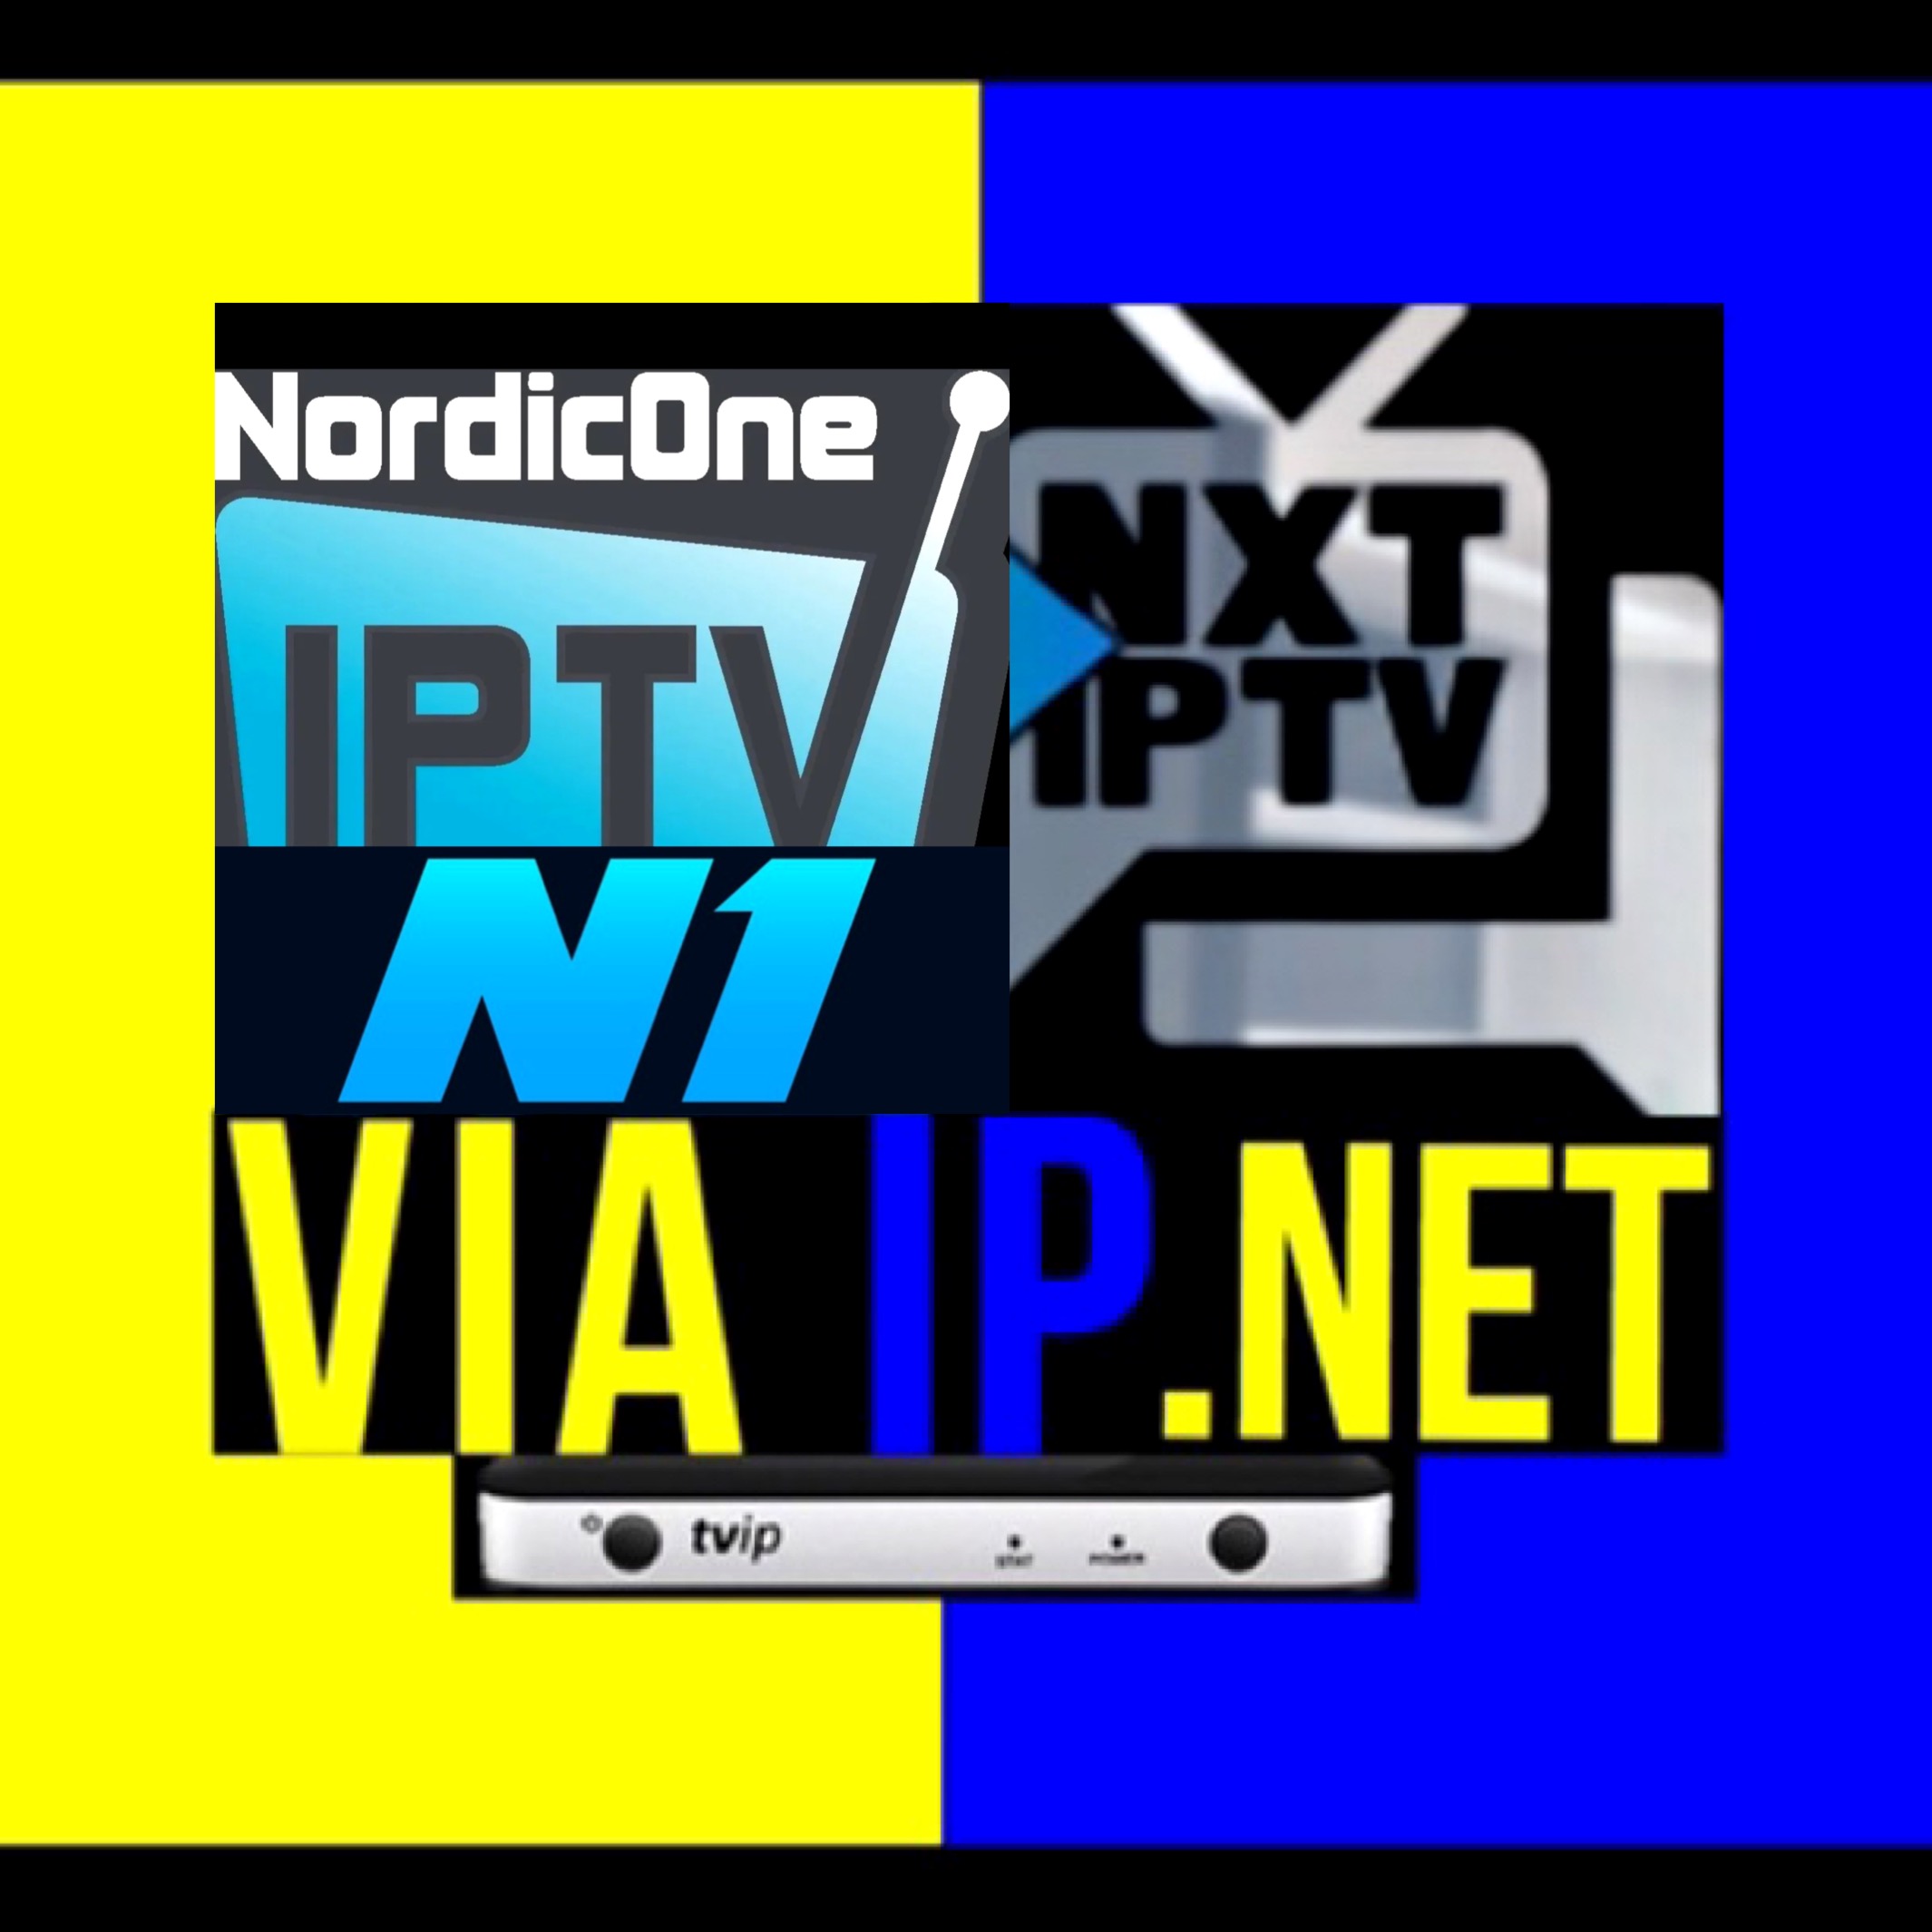 Nordic iptv Sverige (NXT) Viaip.net